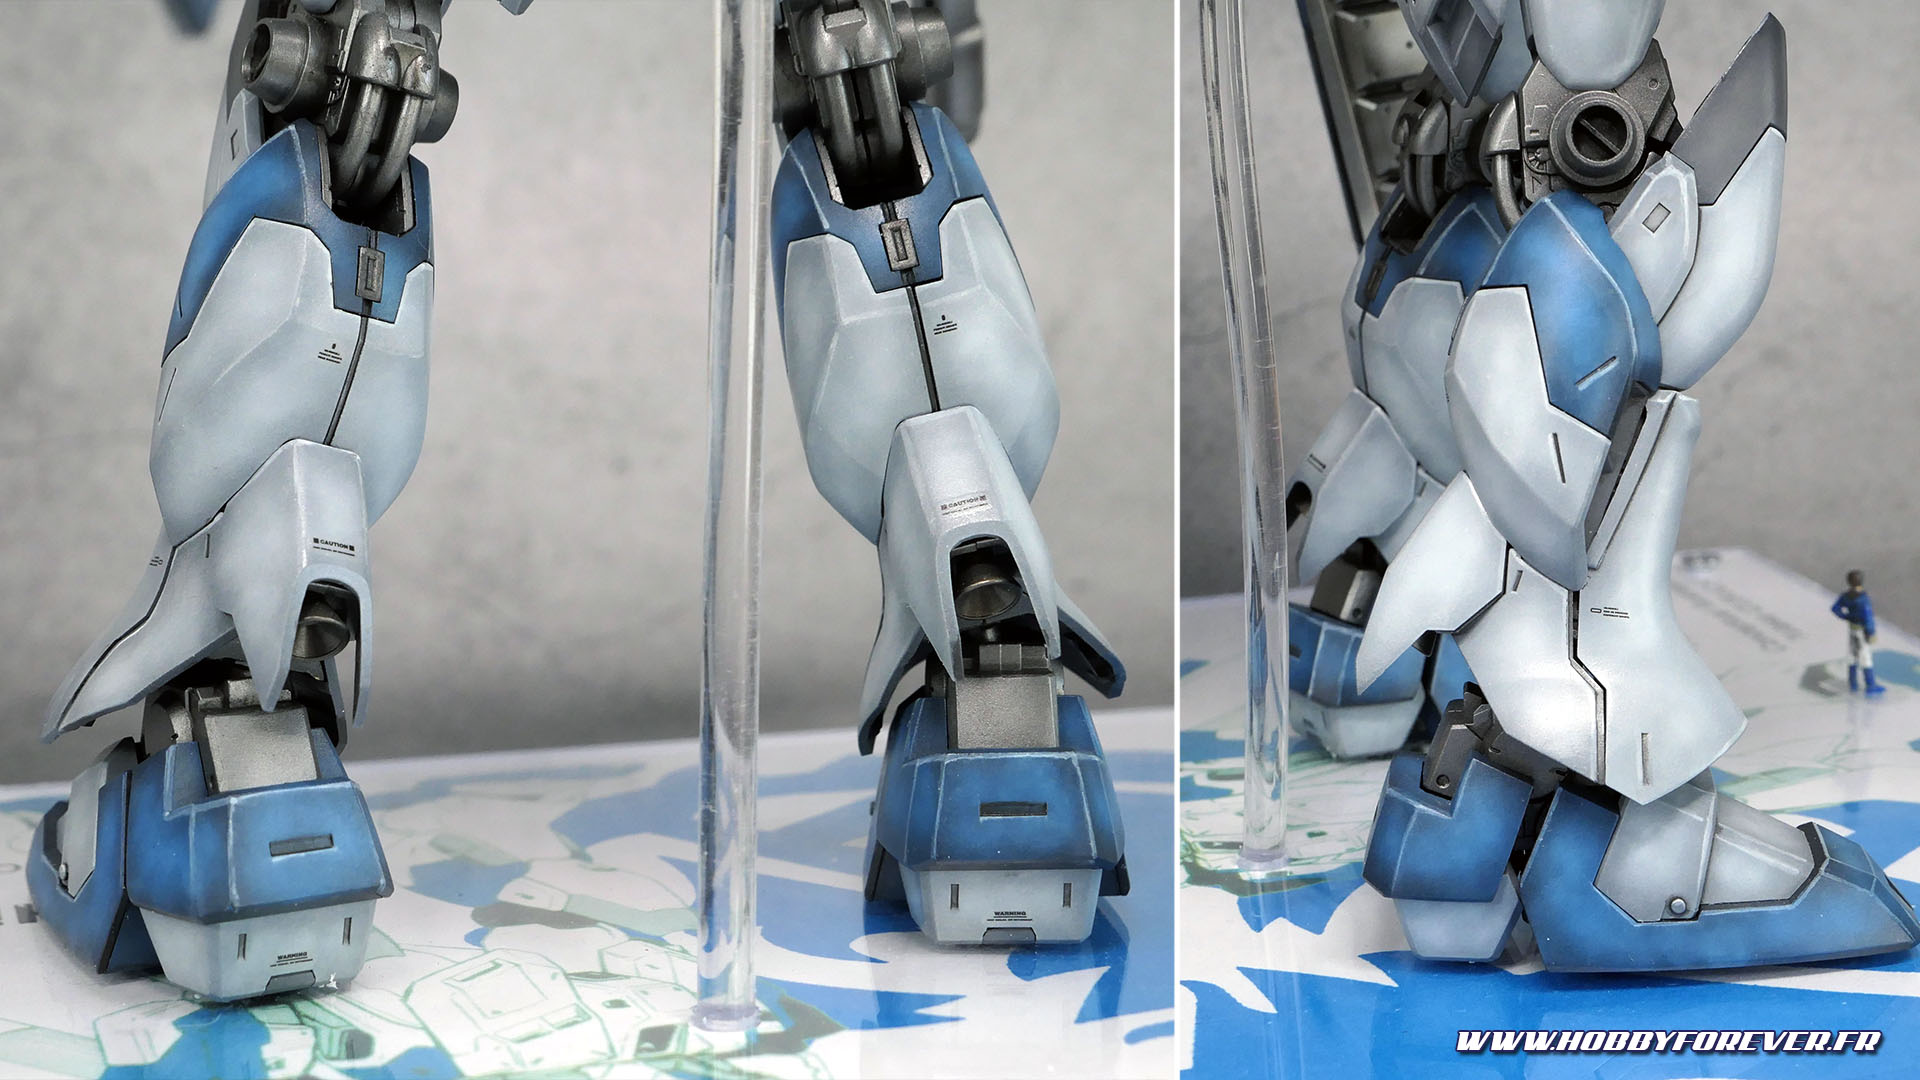 Finished Work - MG RX-93-v2 Hi-Nu Gundam